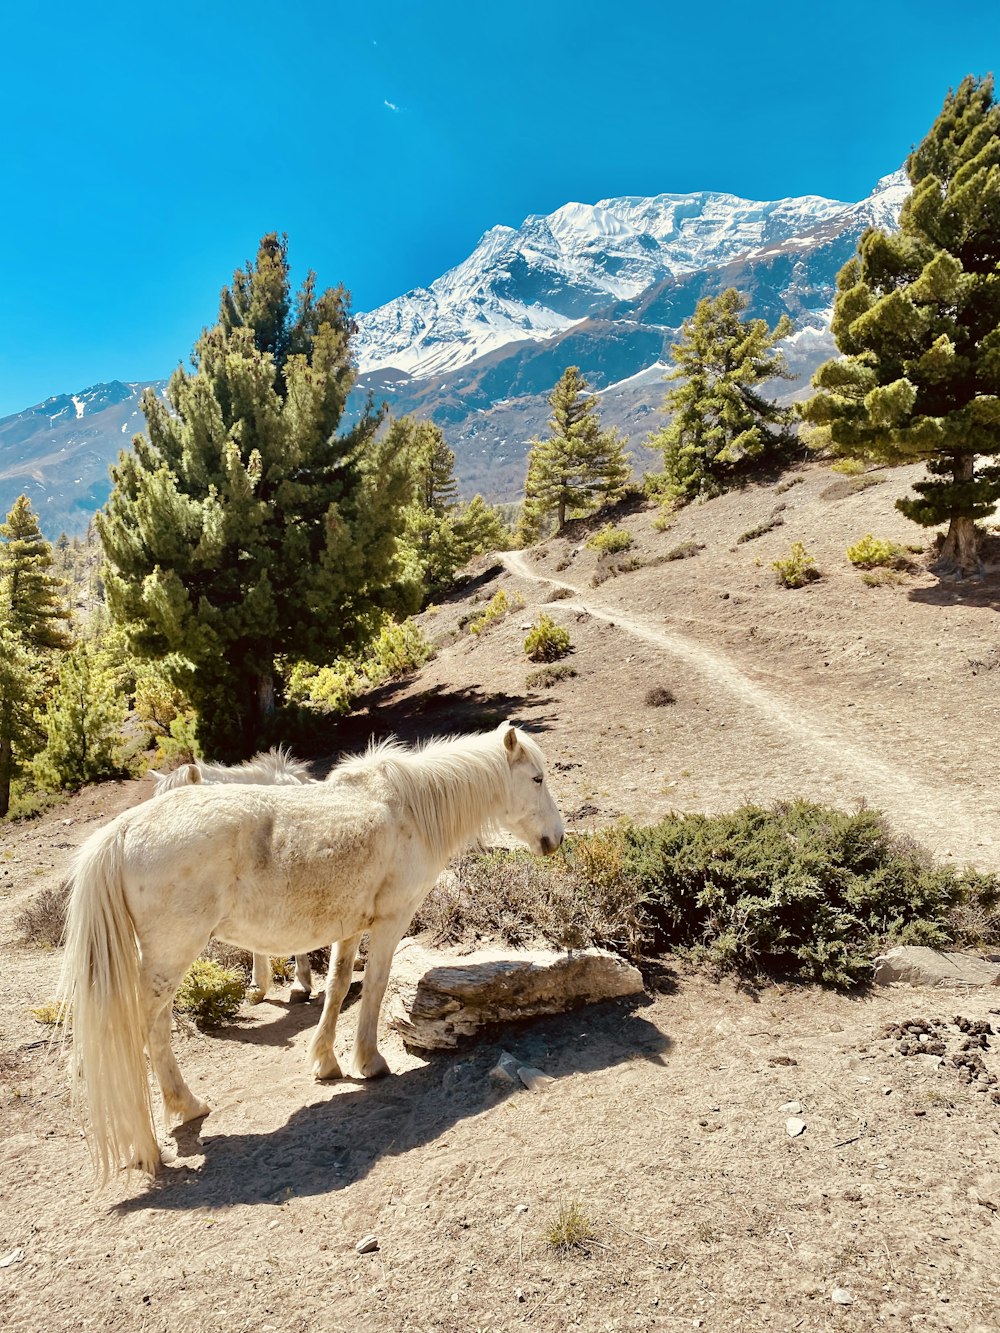 Un caballo blanco parado en una ladera rocosa con árboles y montañas en el fondo